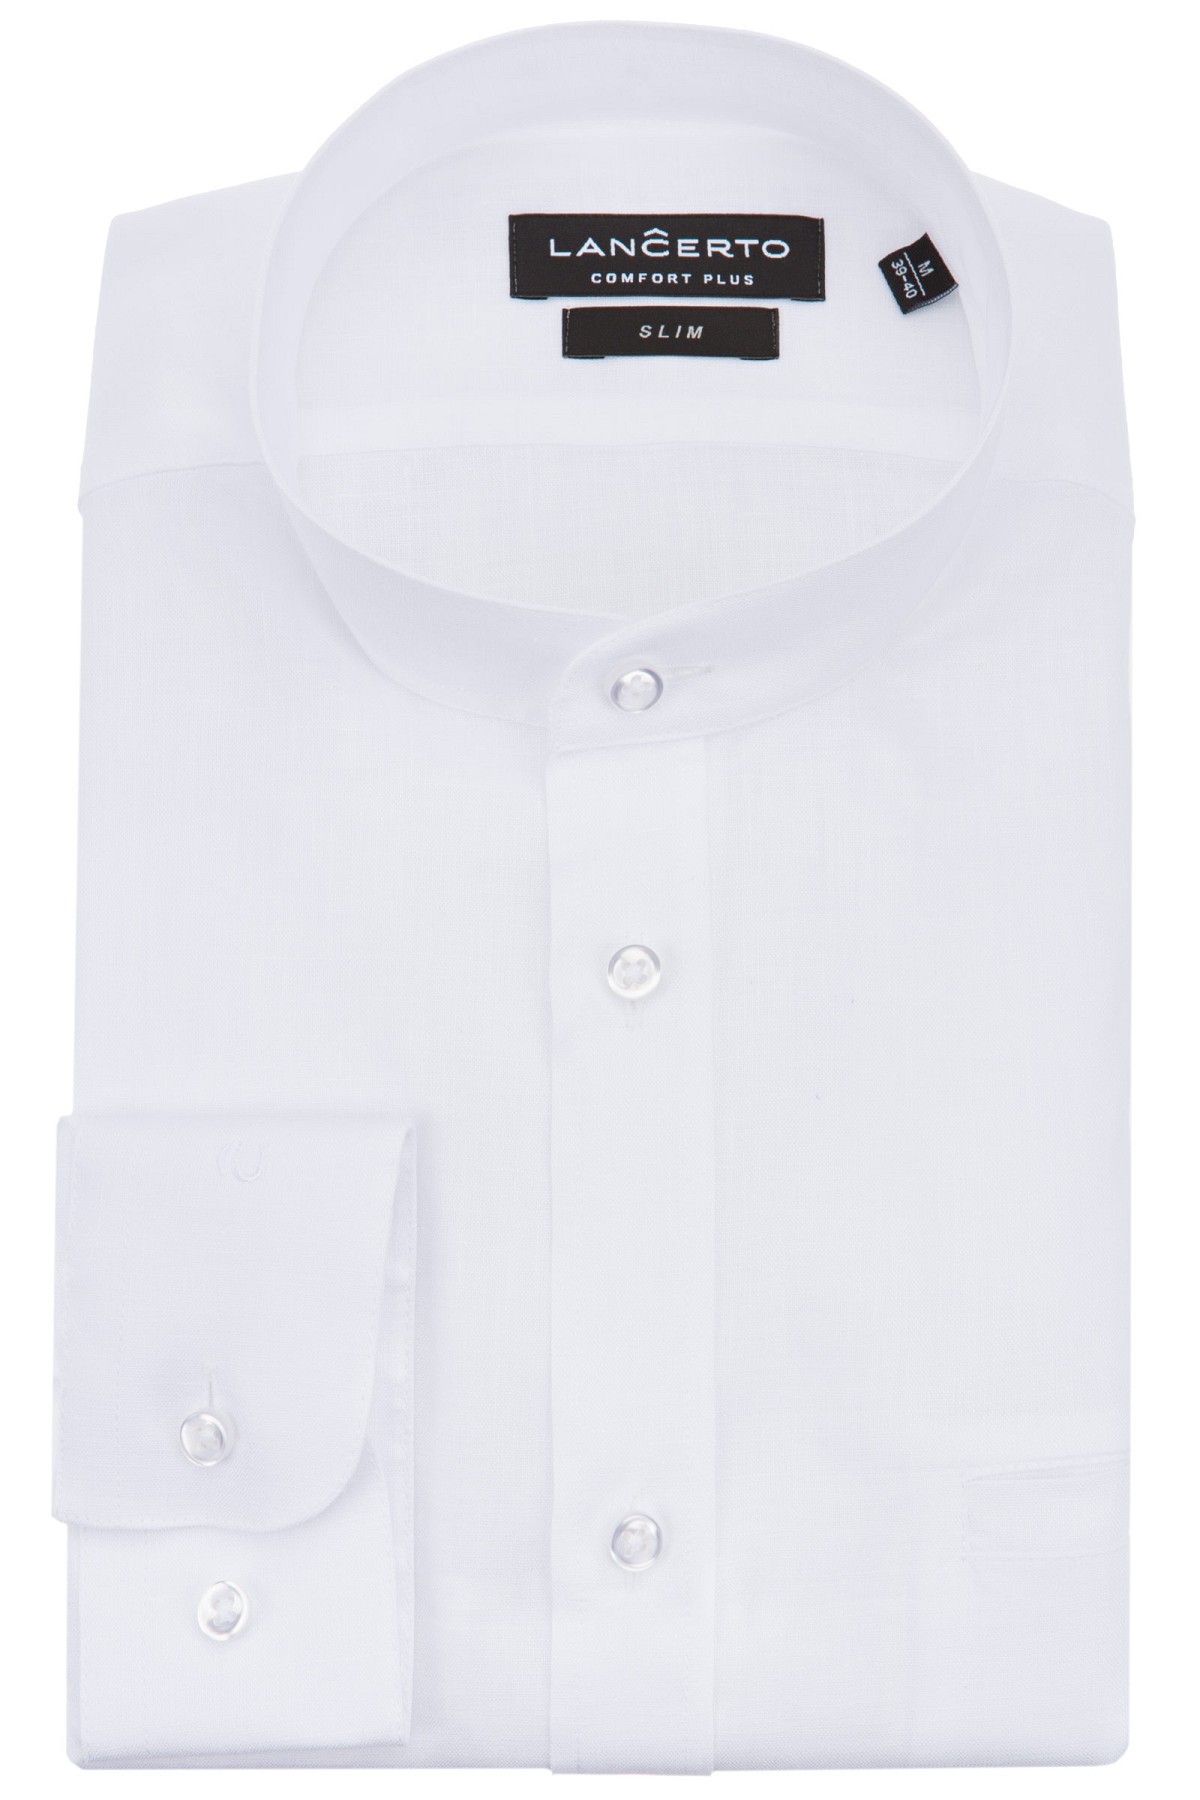 Lancerto - Koszula biała paige